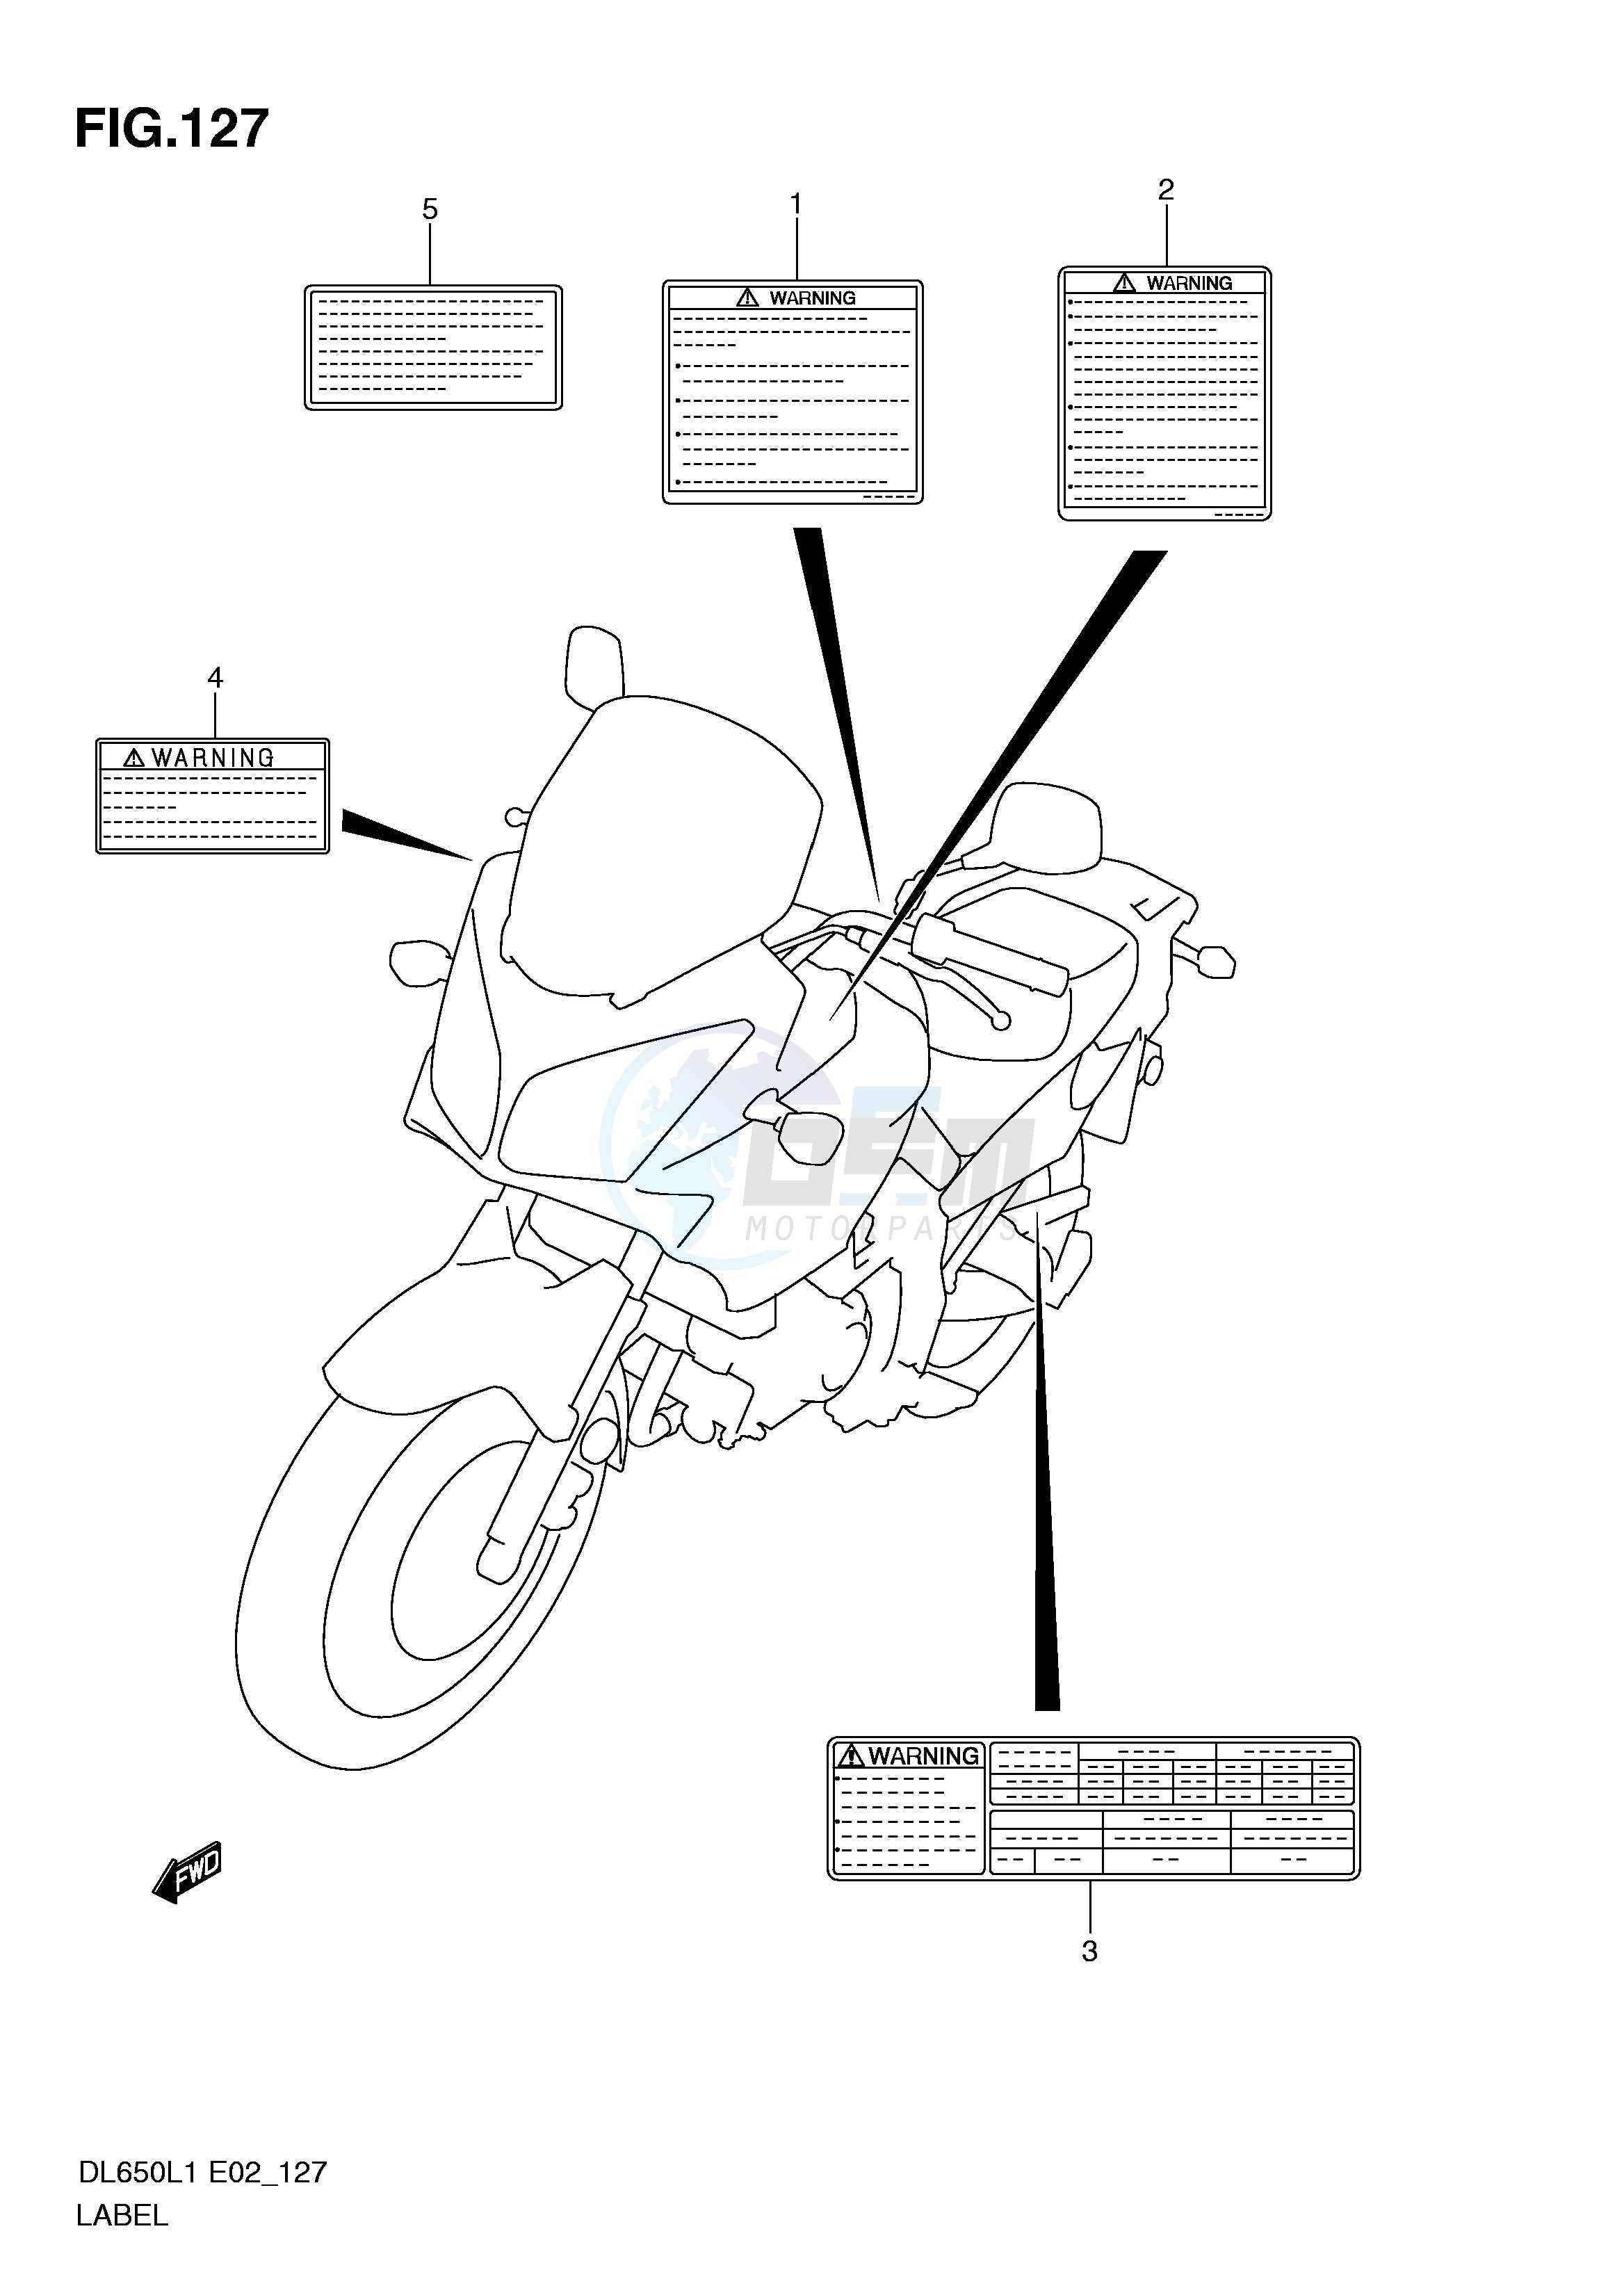 LABEL (DL650UEL1 E19) blueprint